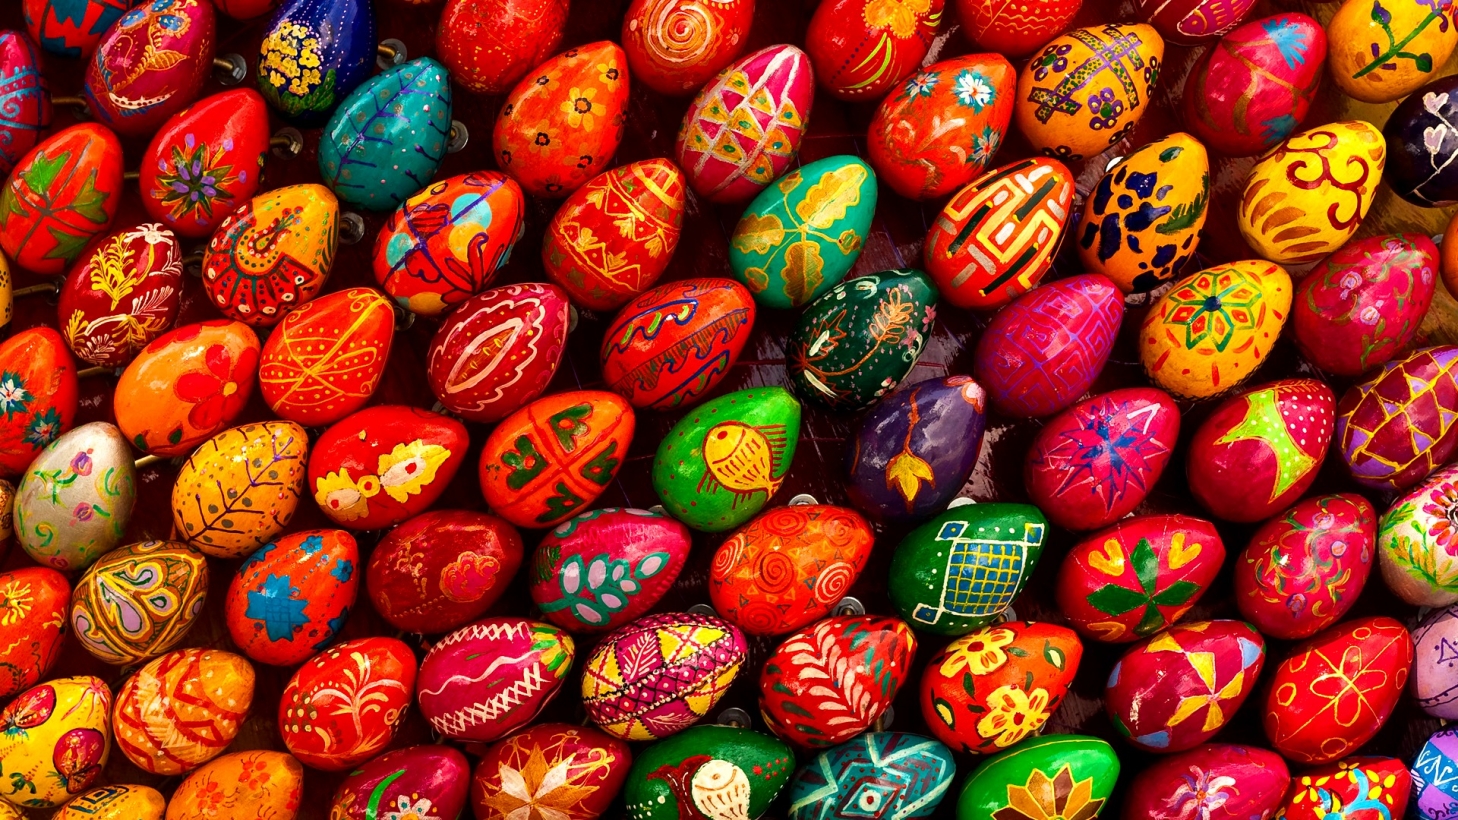 Rādīsim viens otram savas olas! Priecīgas Lieldienas! Olu krāsošanas receptes (Bilde 3)